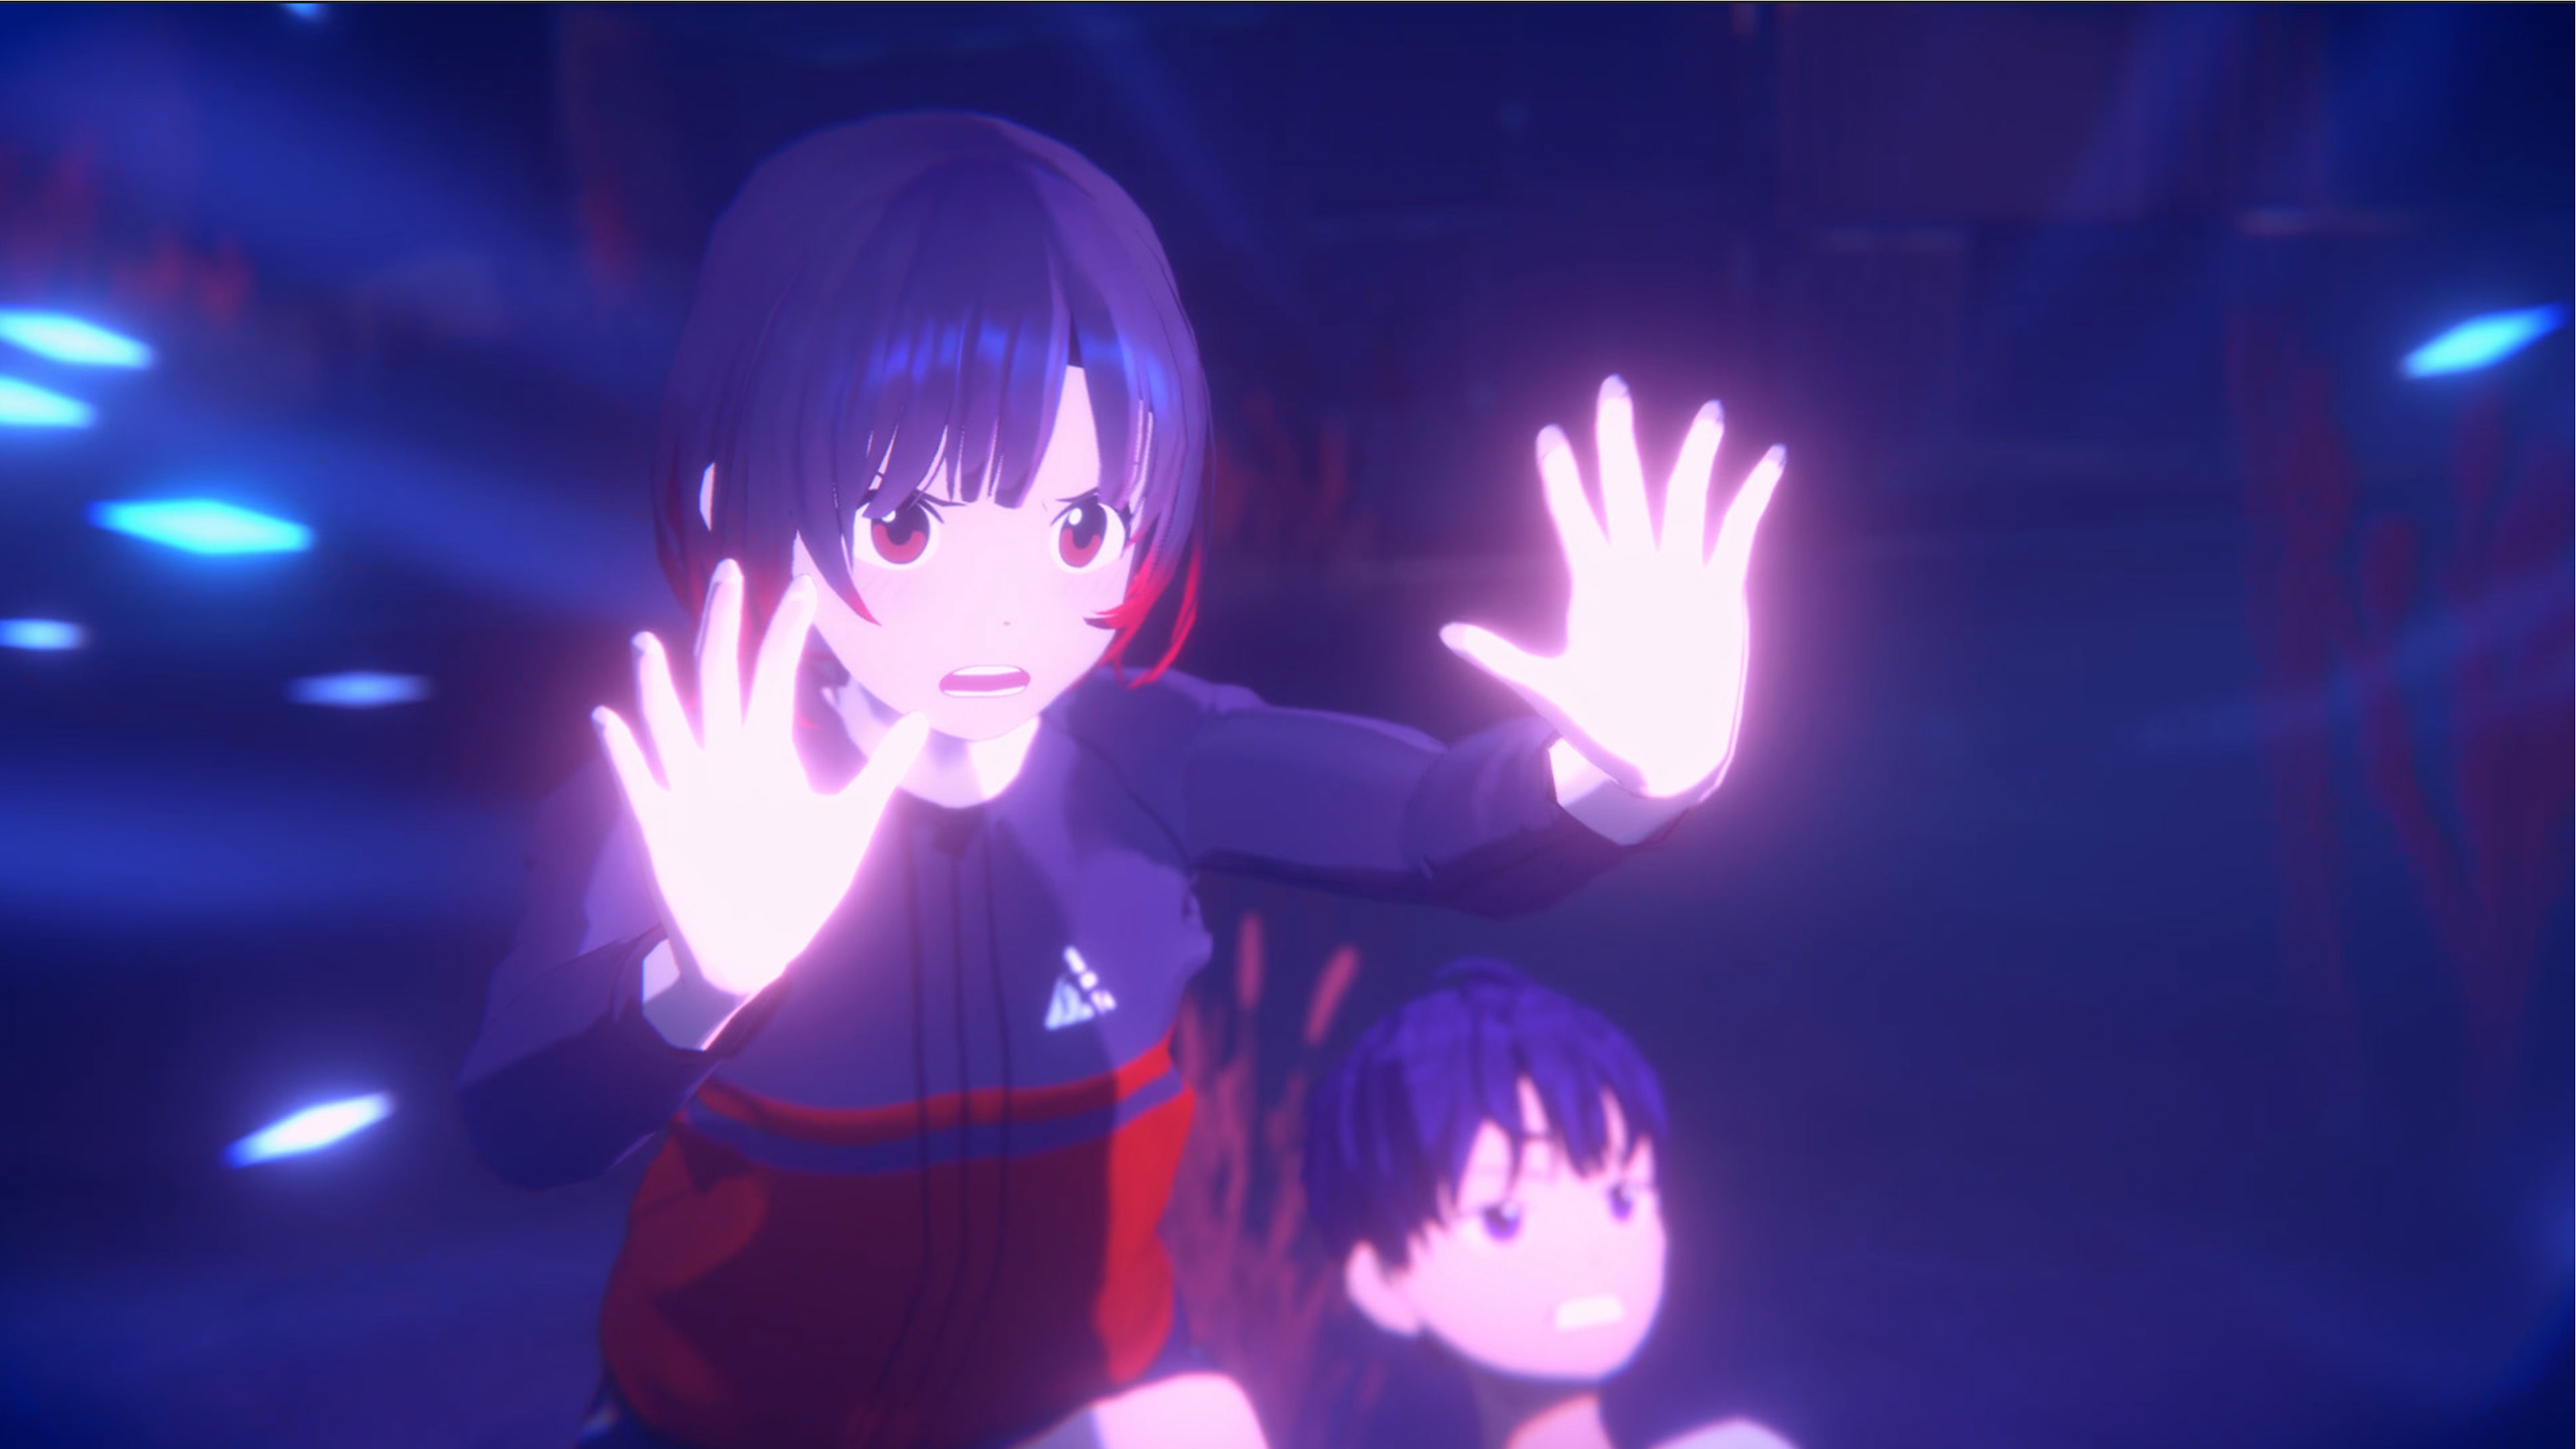 لقطة شاشة من لعبة Eternights بها فتاة من المرحلة الثانوية تتصدى لمهاجم خفي.